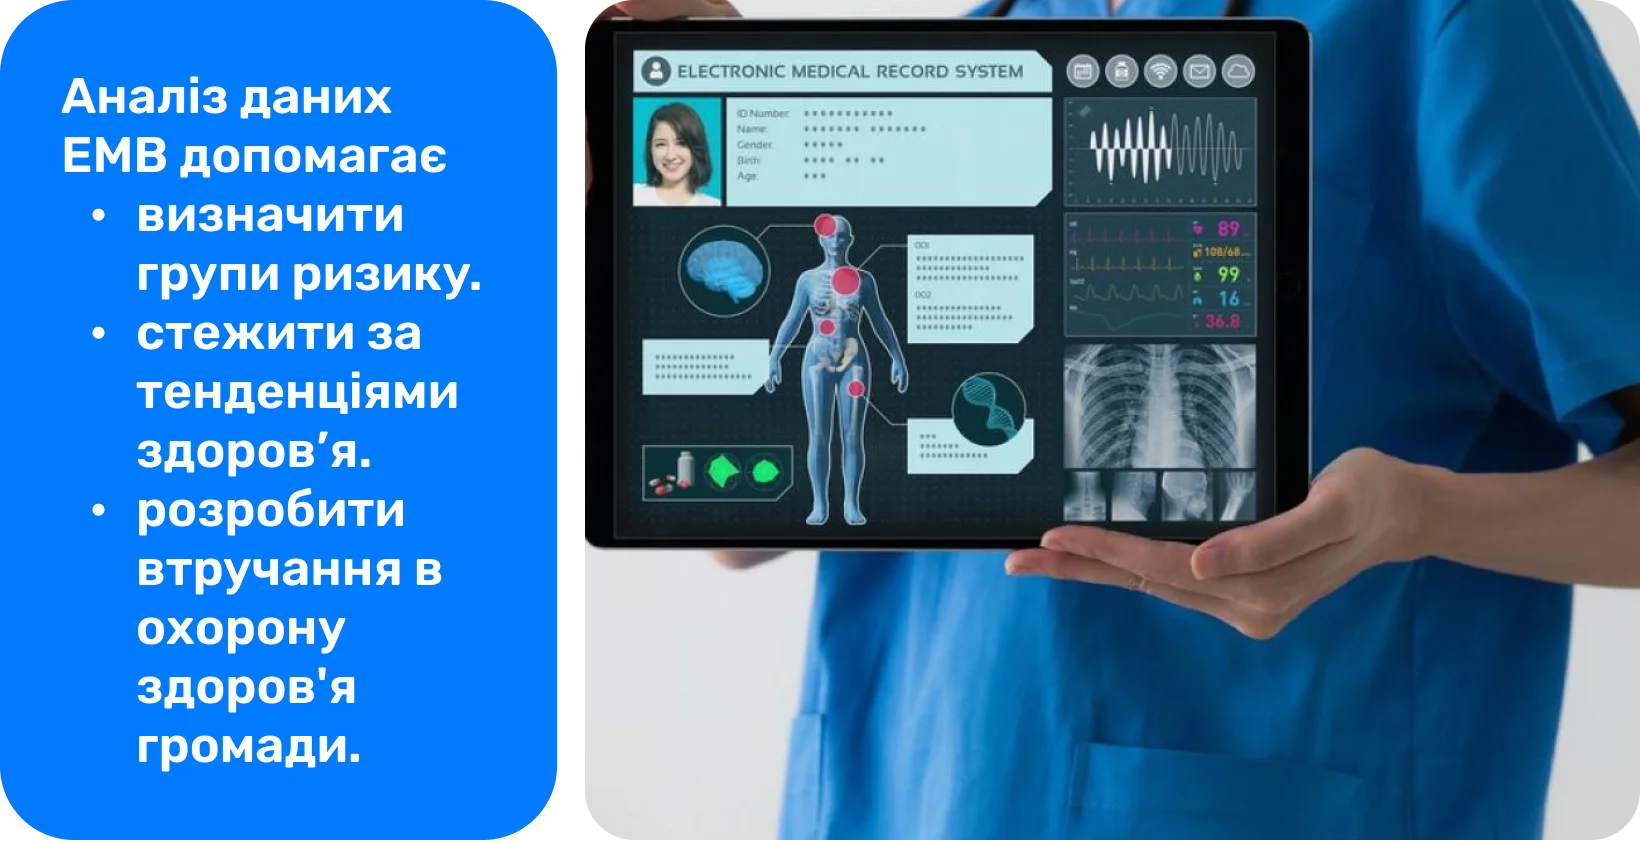 Медичний працівник використовує планшет із системою електронних медичних записів для аналізу даних про стан здоров'я пацієнта.